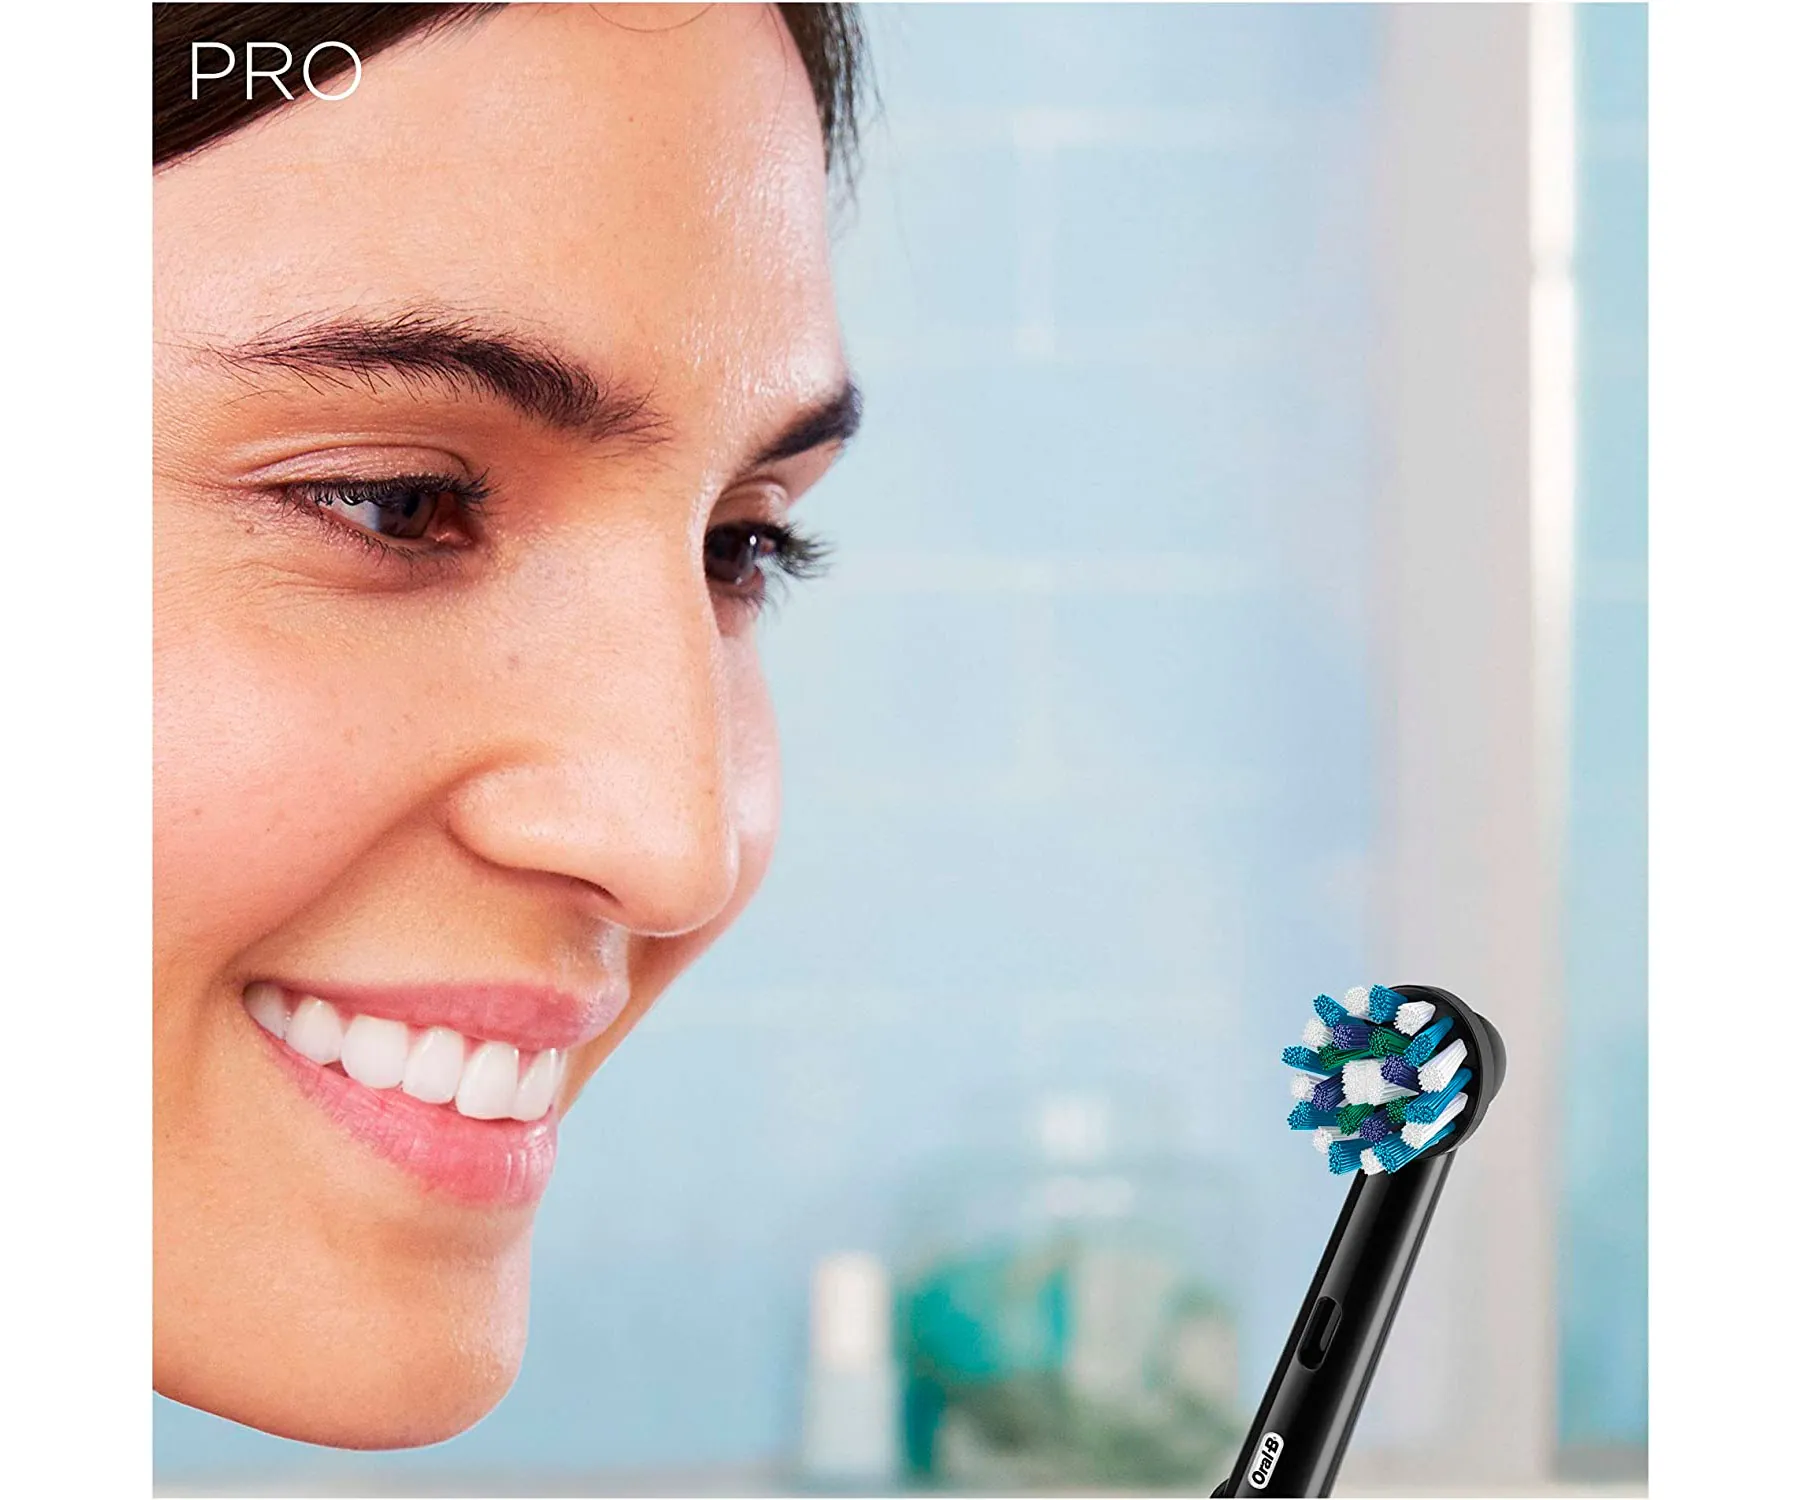 1 programa de limpieza Oral-B Pro 1 750 Design Edition Cepillo de dientes eléctrico para una limpieza profunda de los dientes 1 cepillo 3DWhite temporizador y estuche de viaje sensor de presión 